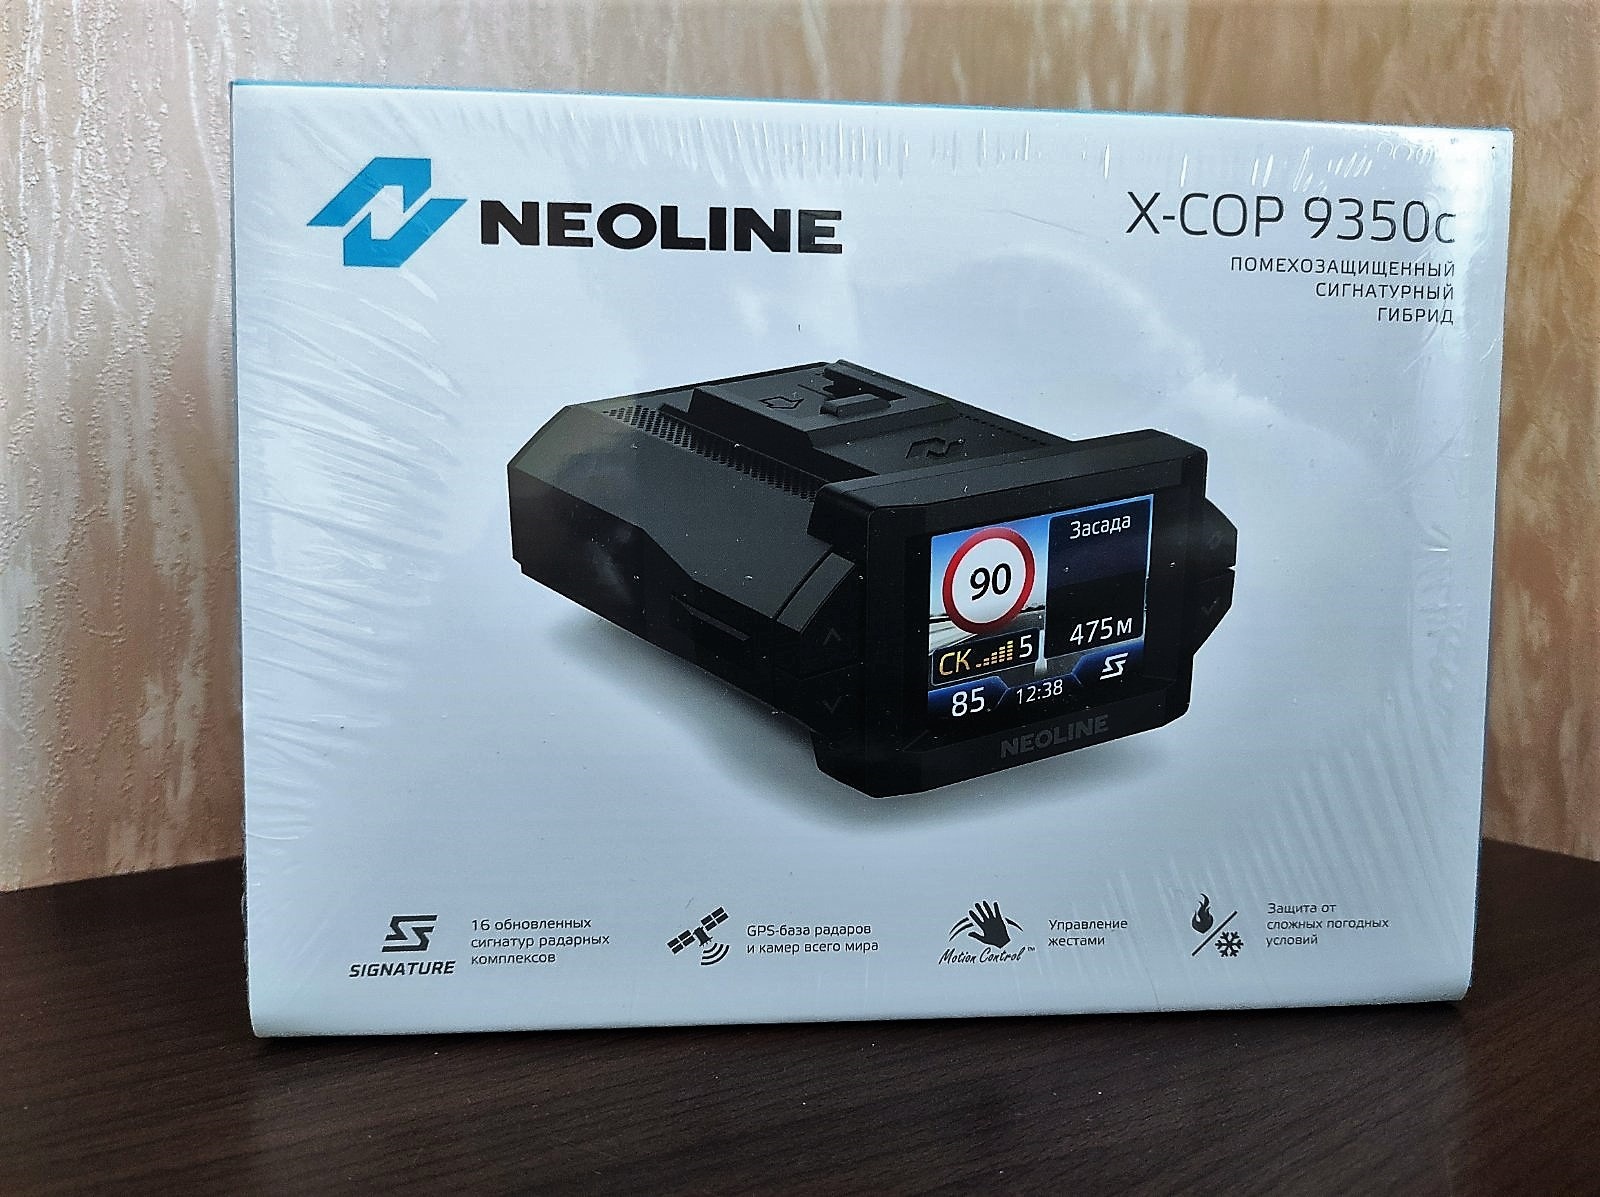 Neoline x cop 9350c